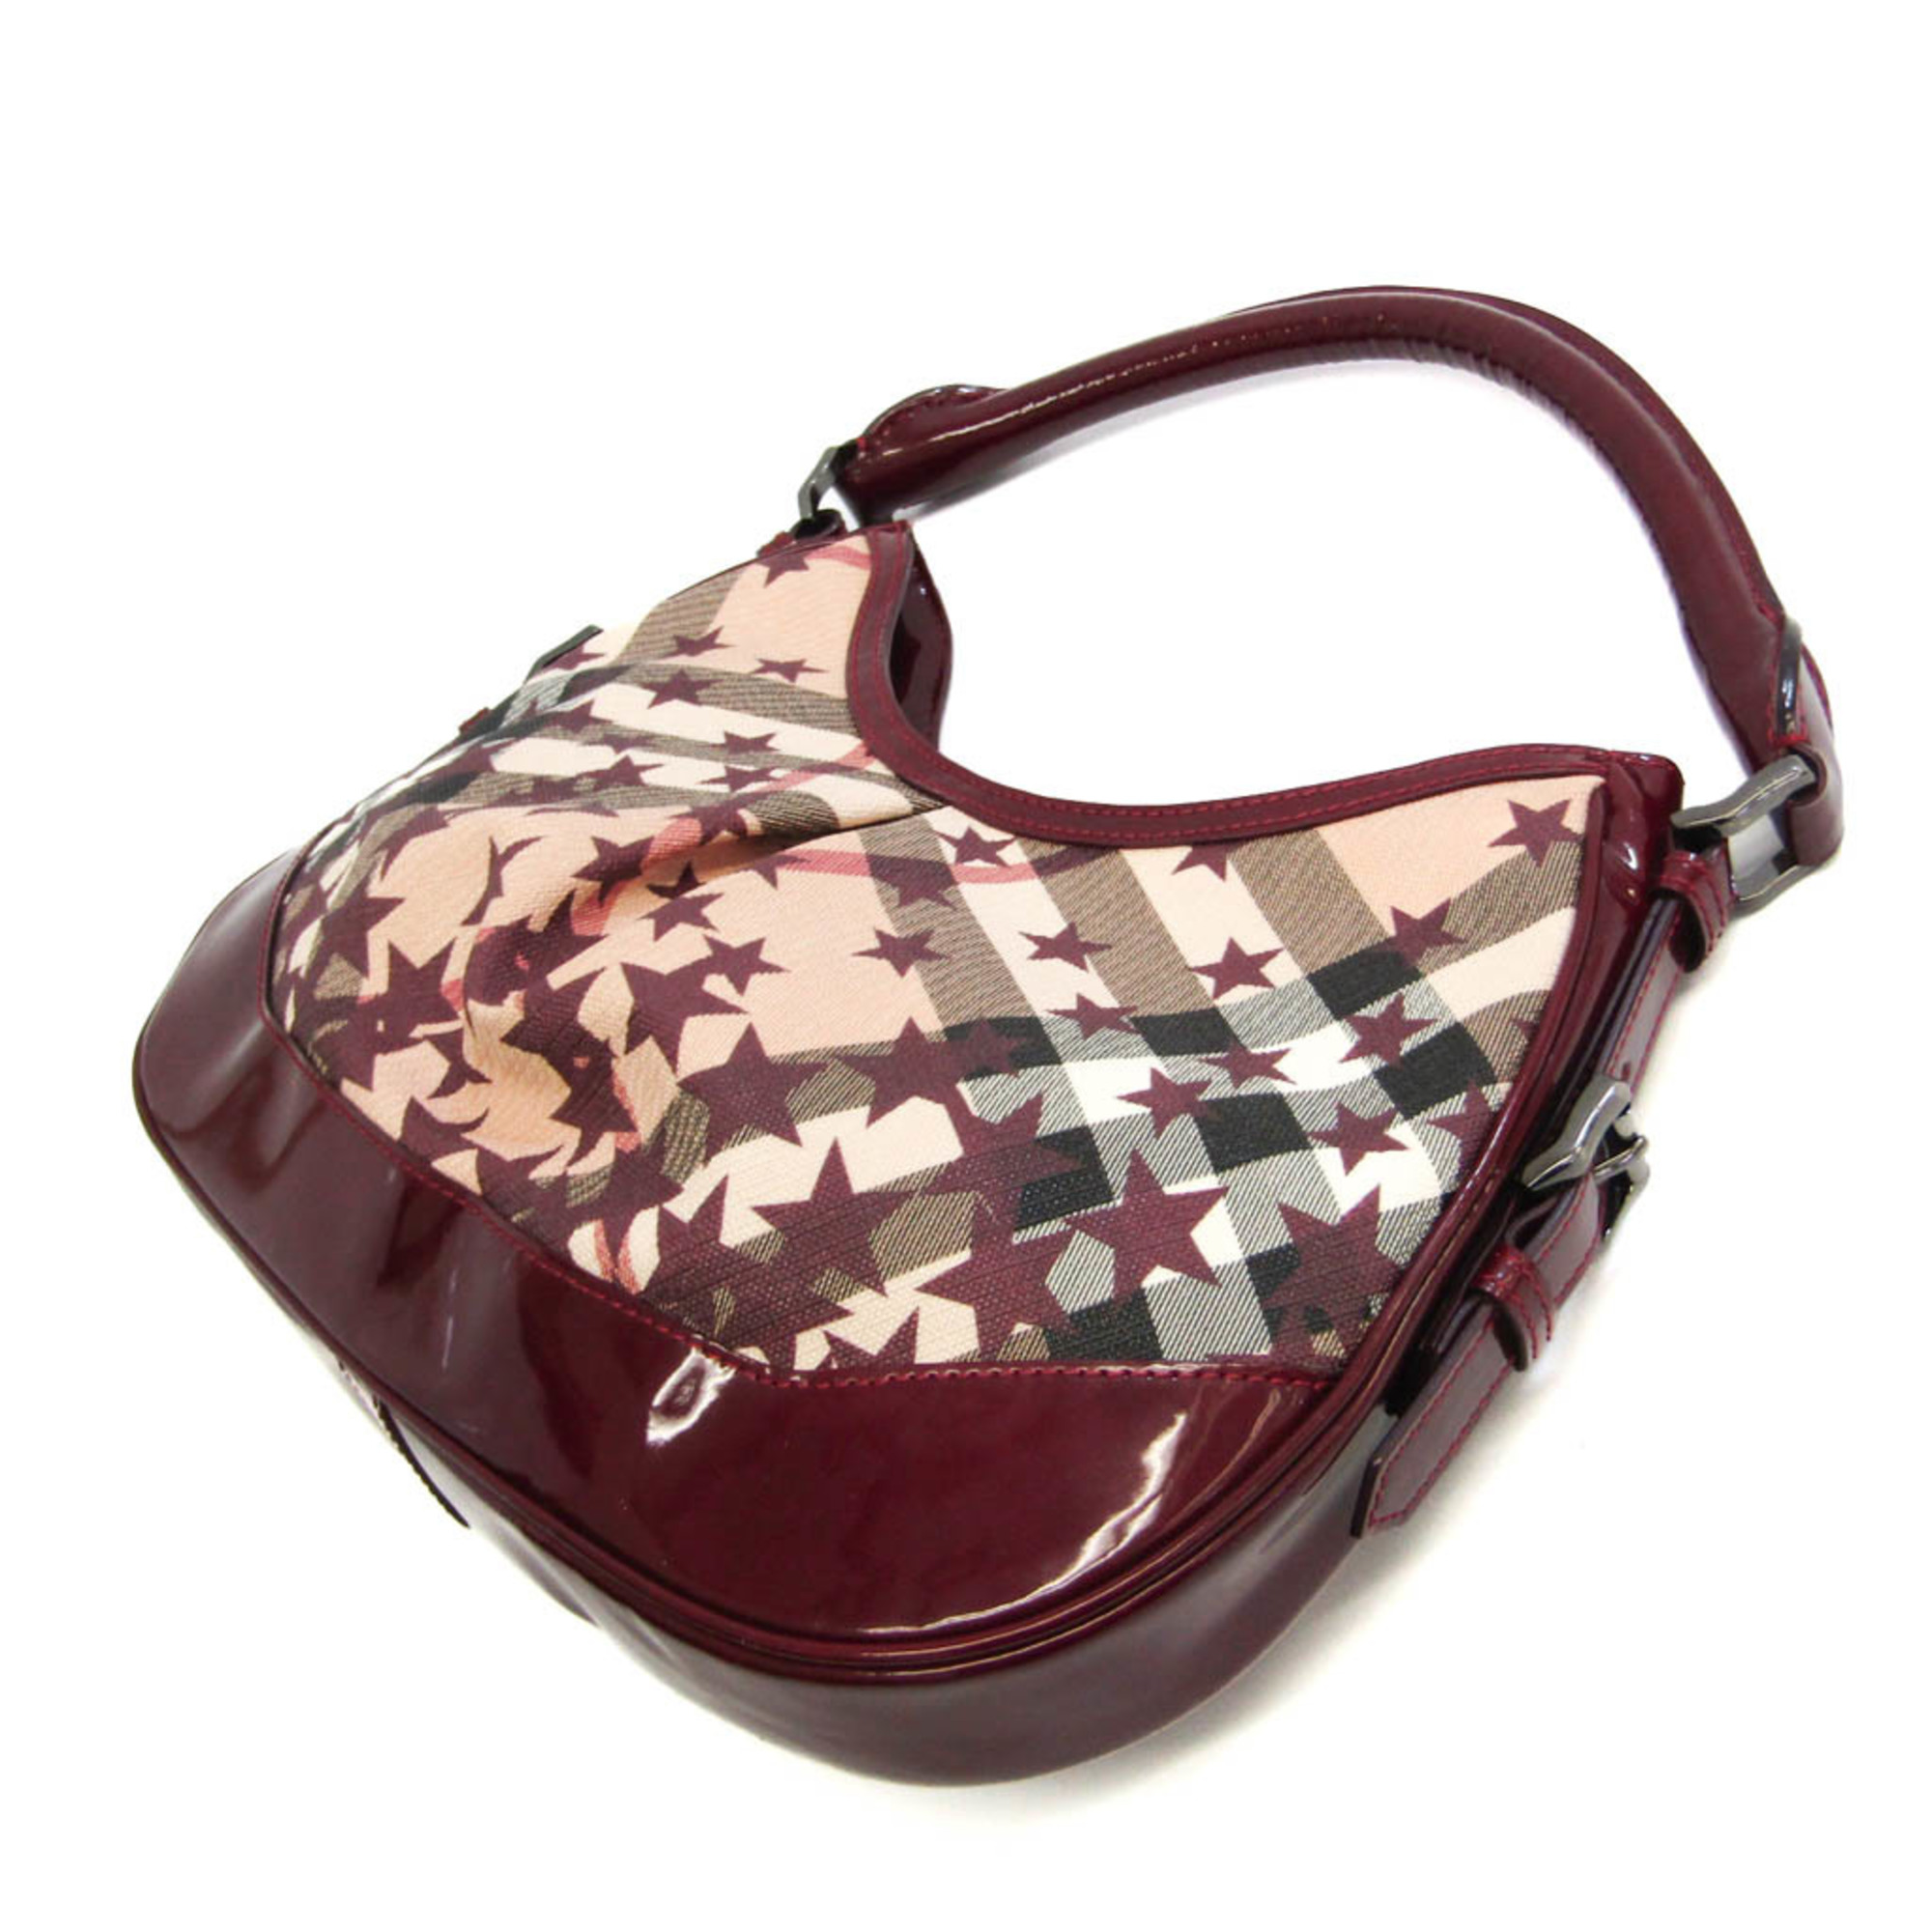 Burberry 3694424 Women's PVC,Patent Leather Shoulder Bag Beige,Bordeaux